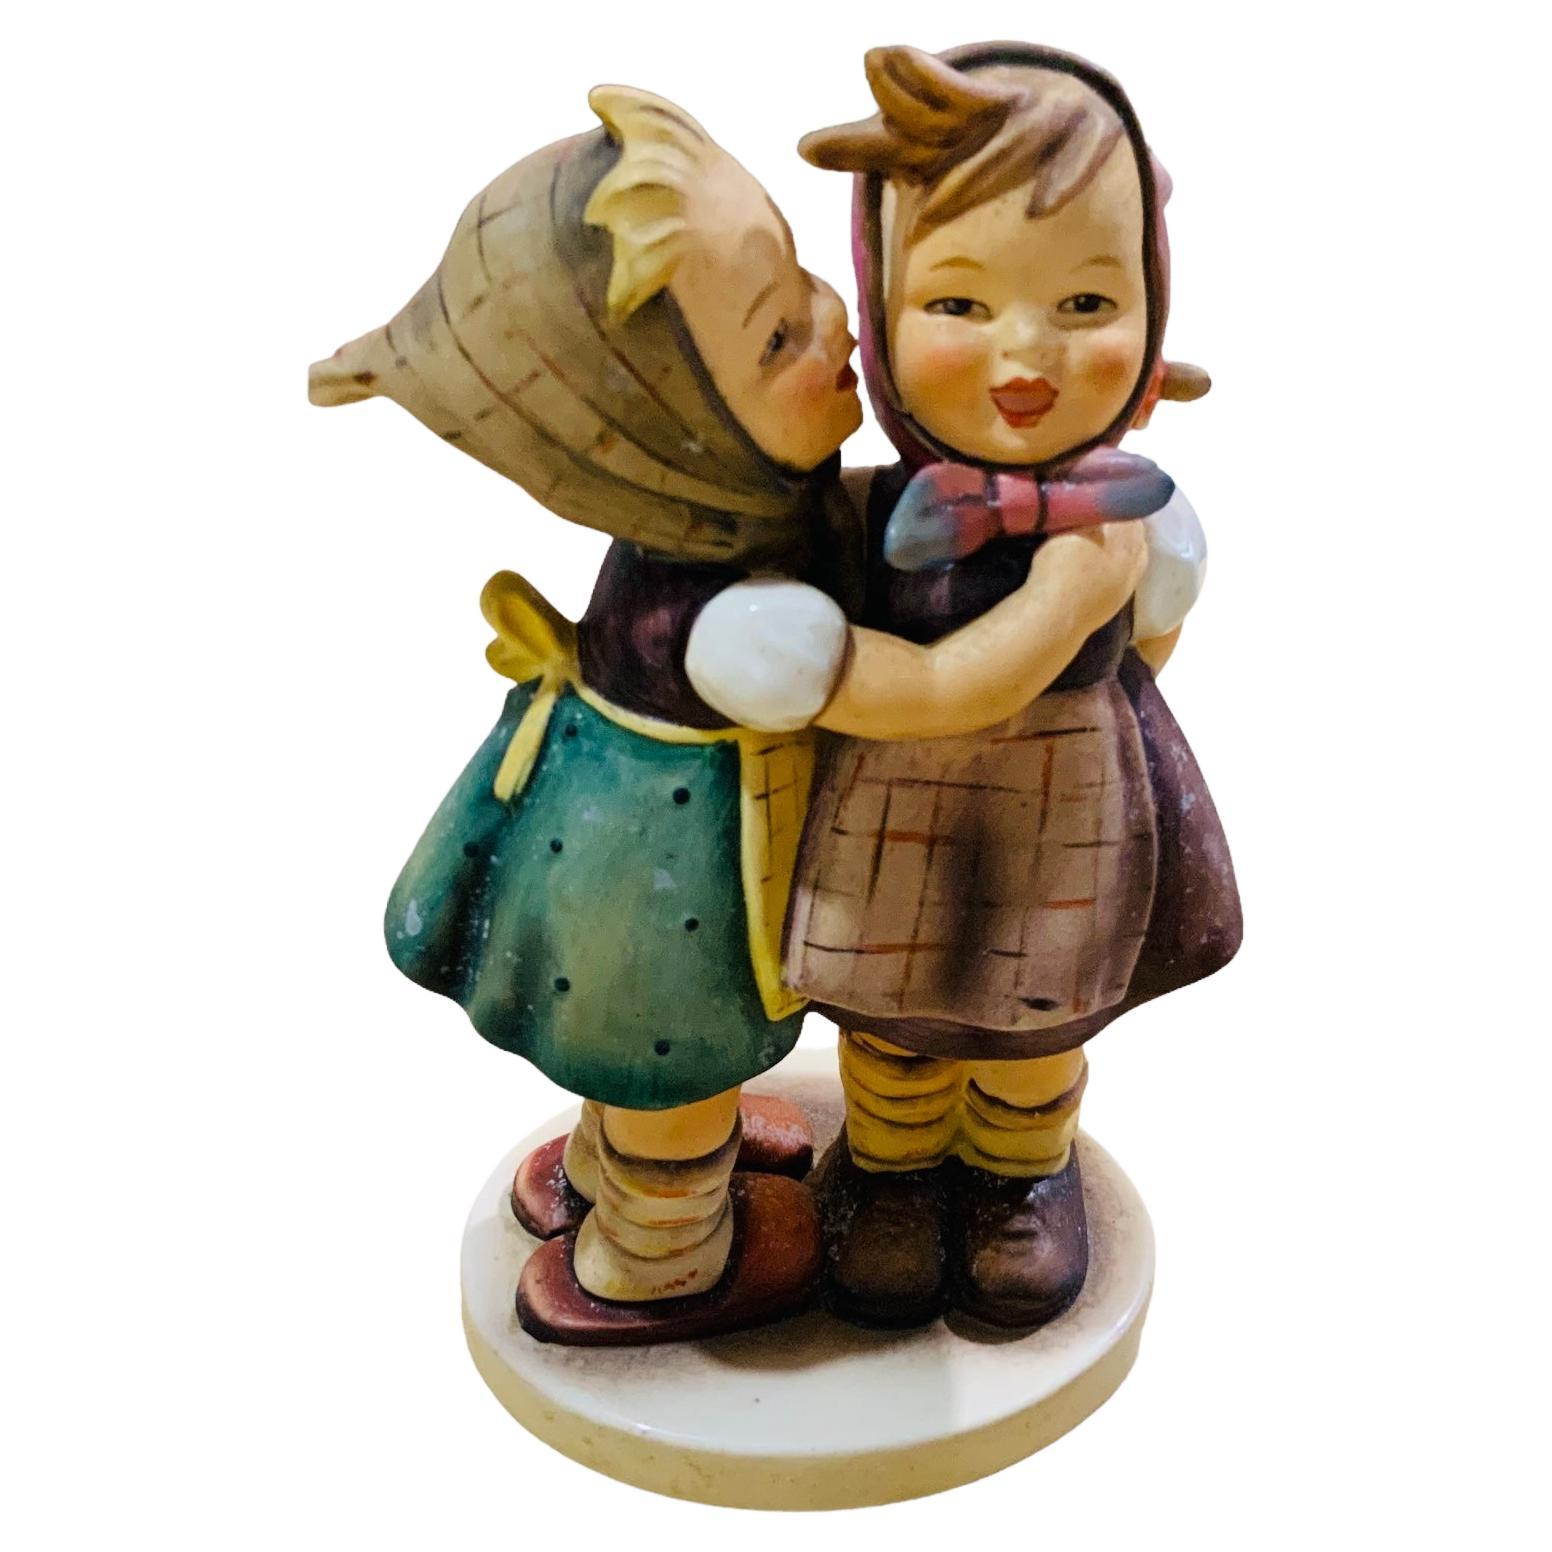 Goebel Company Hummel Porcelain Group Figurines “Telling Her Secret” For Sale